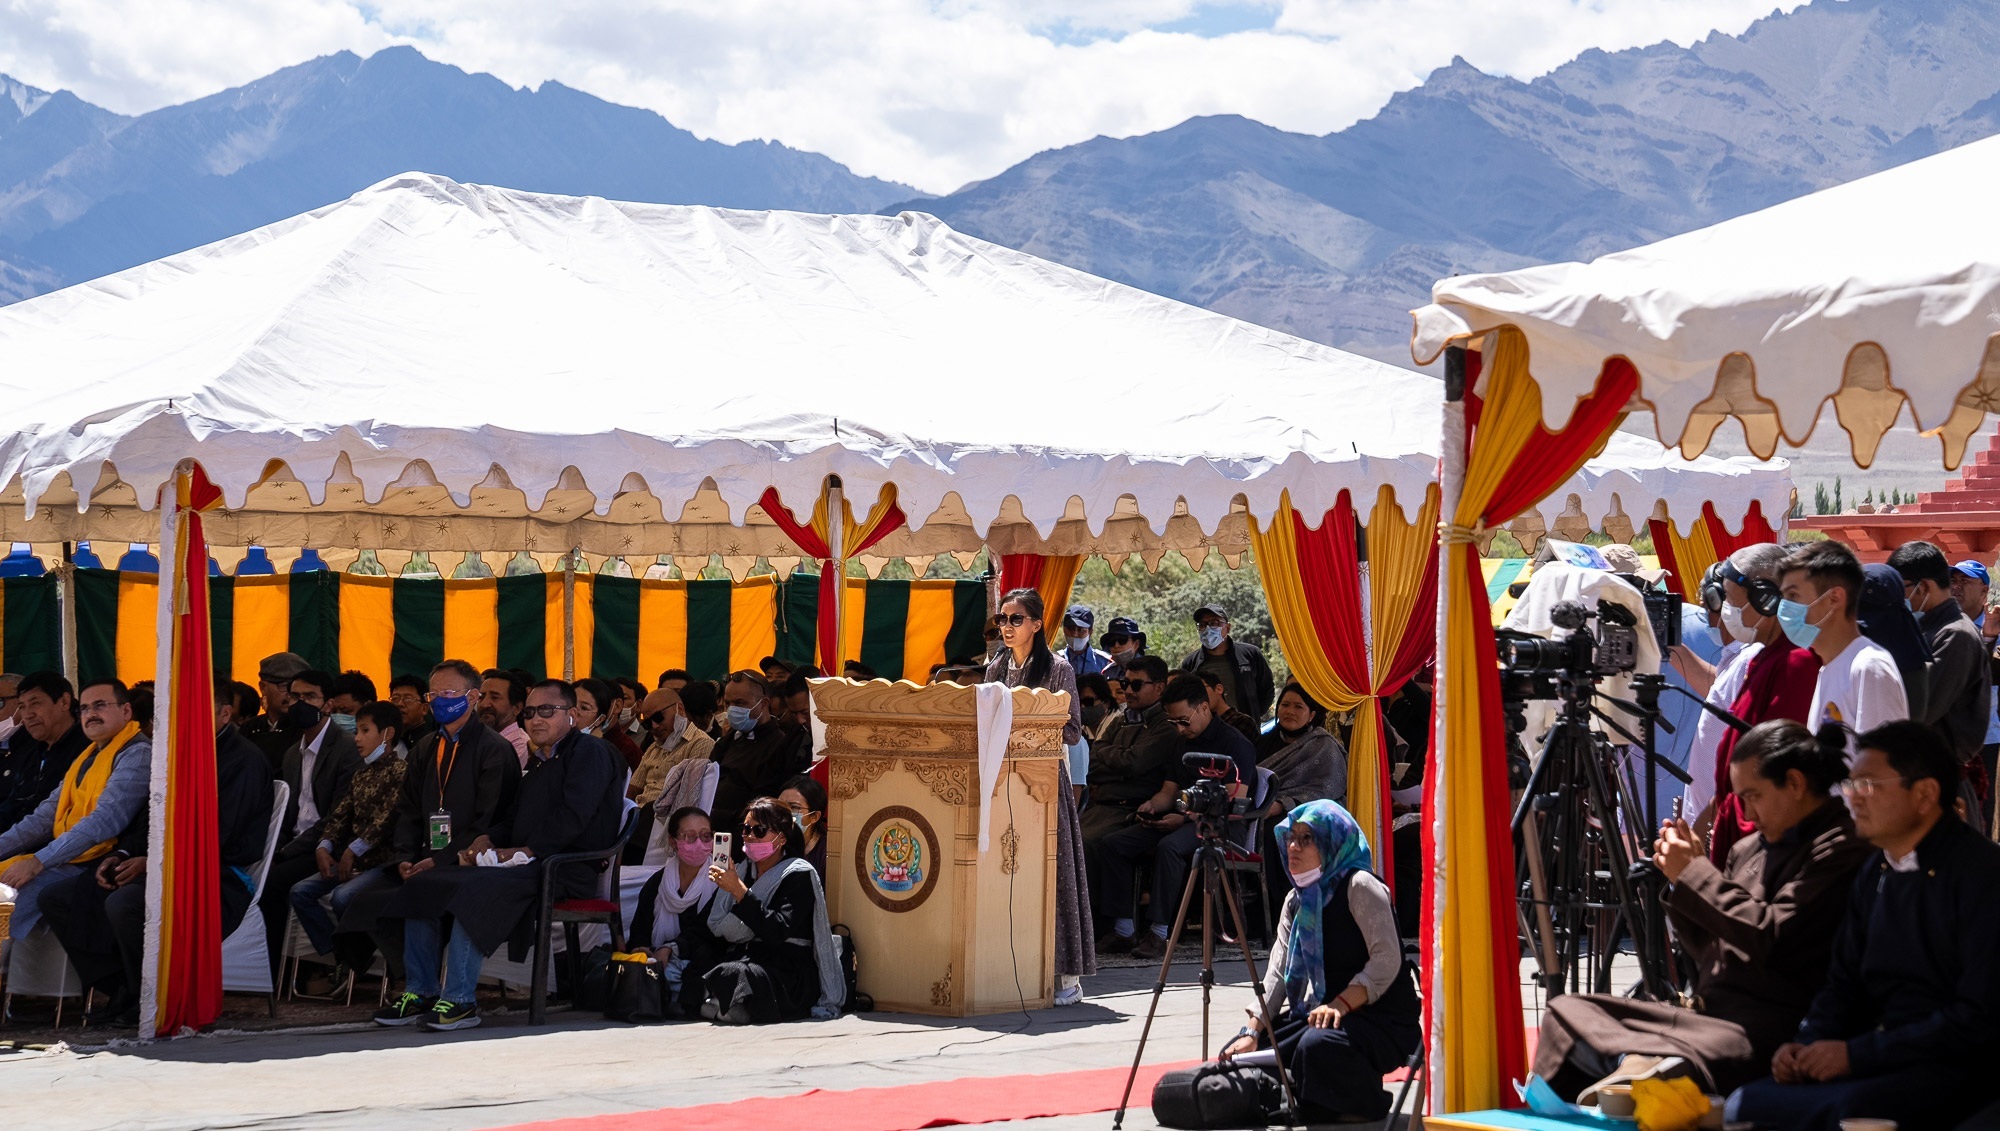 Thánh Đức Đạt Lai Lạt Ma được giới thiệu với khán giả đang vân tập để nghe Ngài phát biểu trước bữa tiệc trưa do Hội đồng Phát triển Miền Núi Tự trị Ladakh (LAHDC) tổ chức tại Sindhu Ghat ở Leh, Ladakh, UT, Ấn Độ vào 23 tháng 8, 2022. Ảnh của Tenzin Choejor